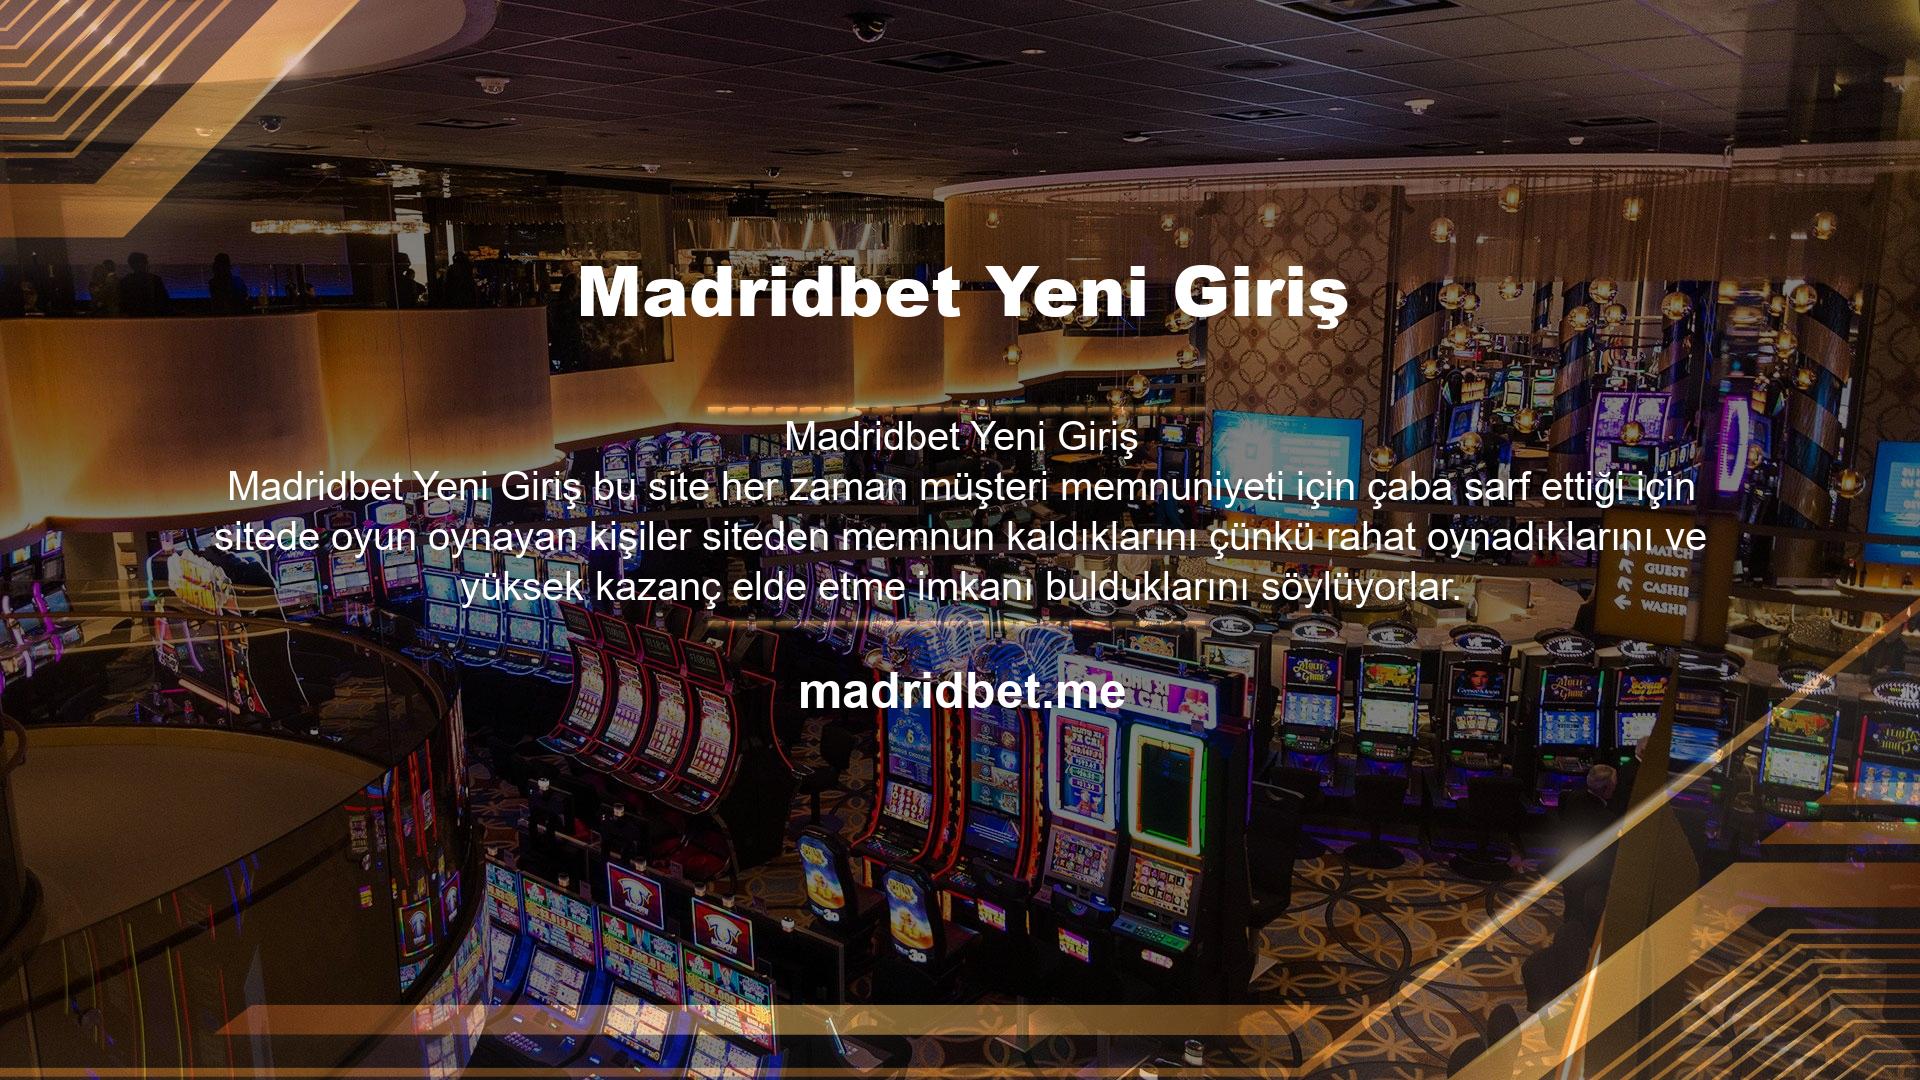 Madridbet web sitesinin altyapısı da kullanıcıların en uygun şekilde oyun oynayabilmeleri ve doğru oynarken para kazanabilmeleri için özel olarak tasarlanmıştır